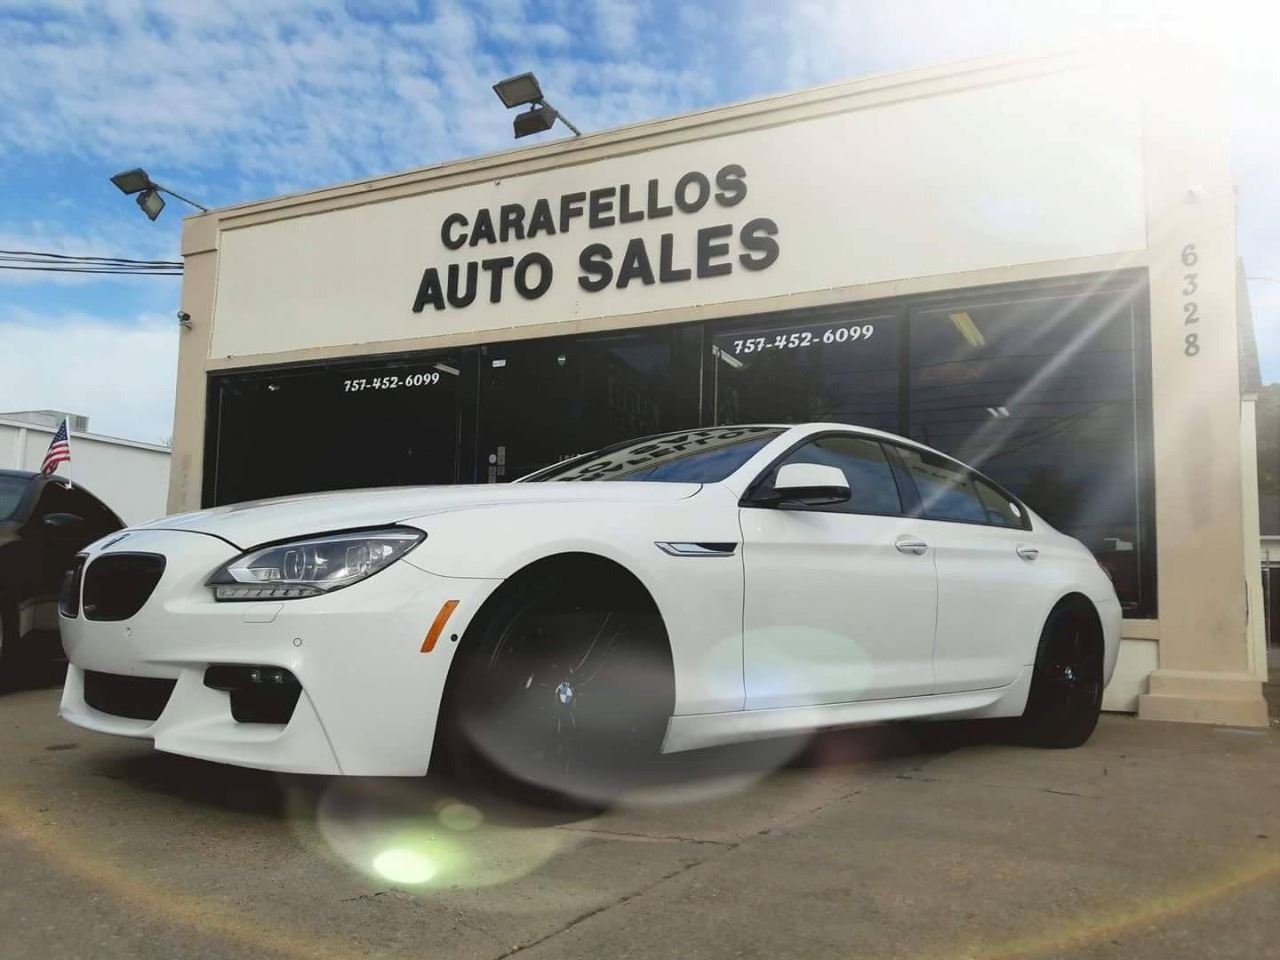 Carafello's Auto Sales